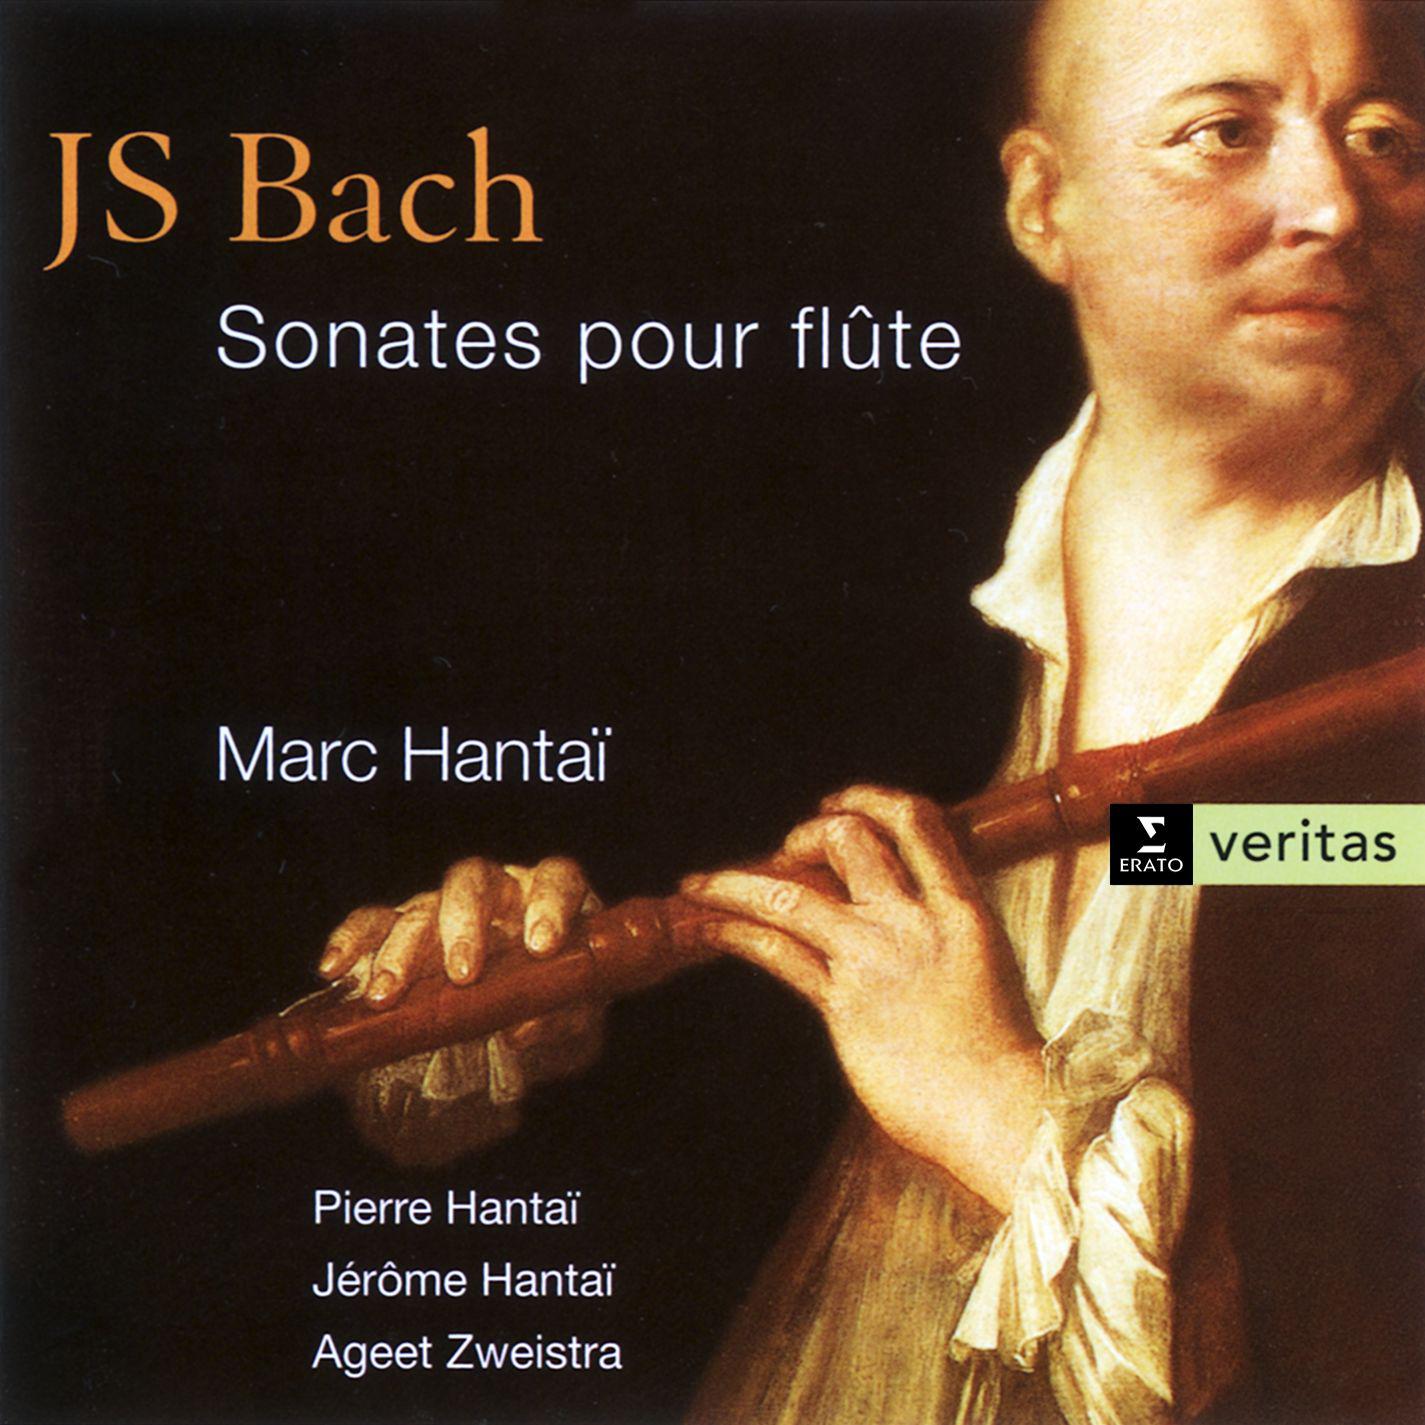 Sonata in B minor for Flute and Harpsichord BWV1030: III. Presto